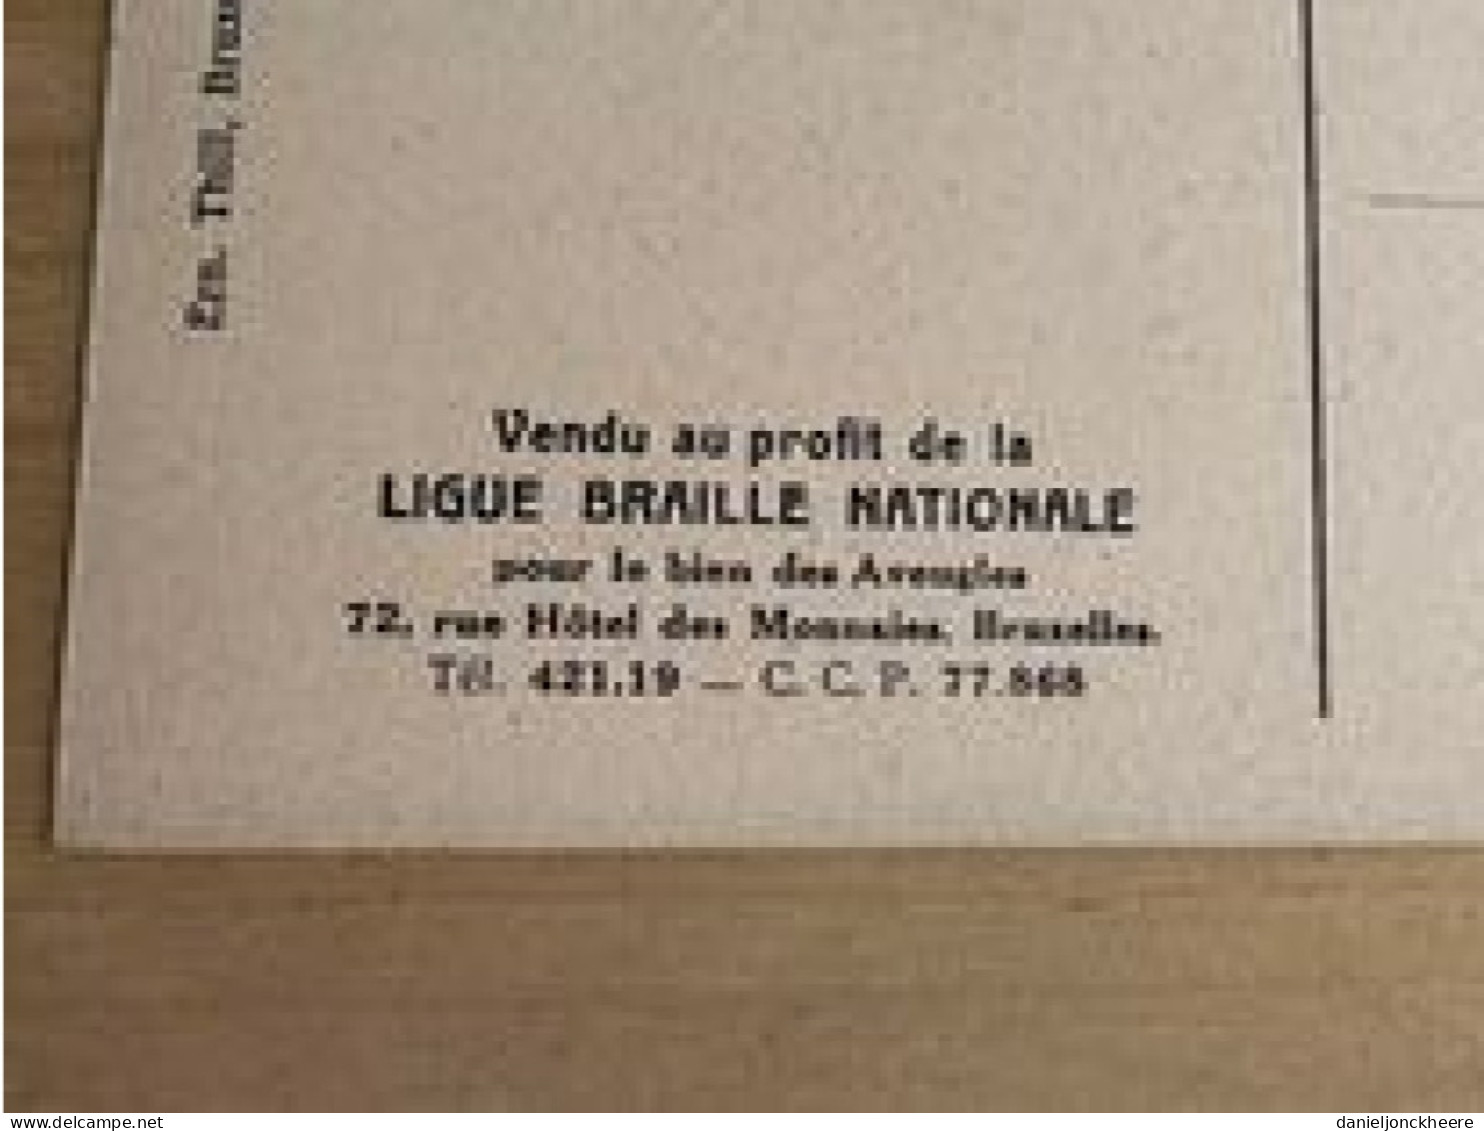 Carte Postale Postkaart Postcard Portrait Du Senateur X Par Cecile Douard Mons 1897 Ligue Braille Nationale - Politicians & Soldiers